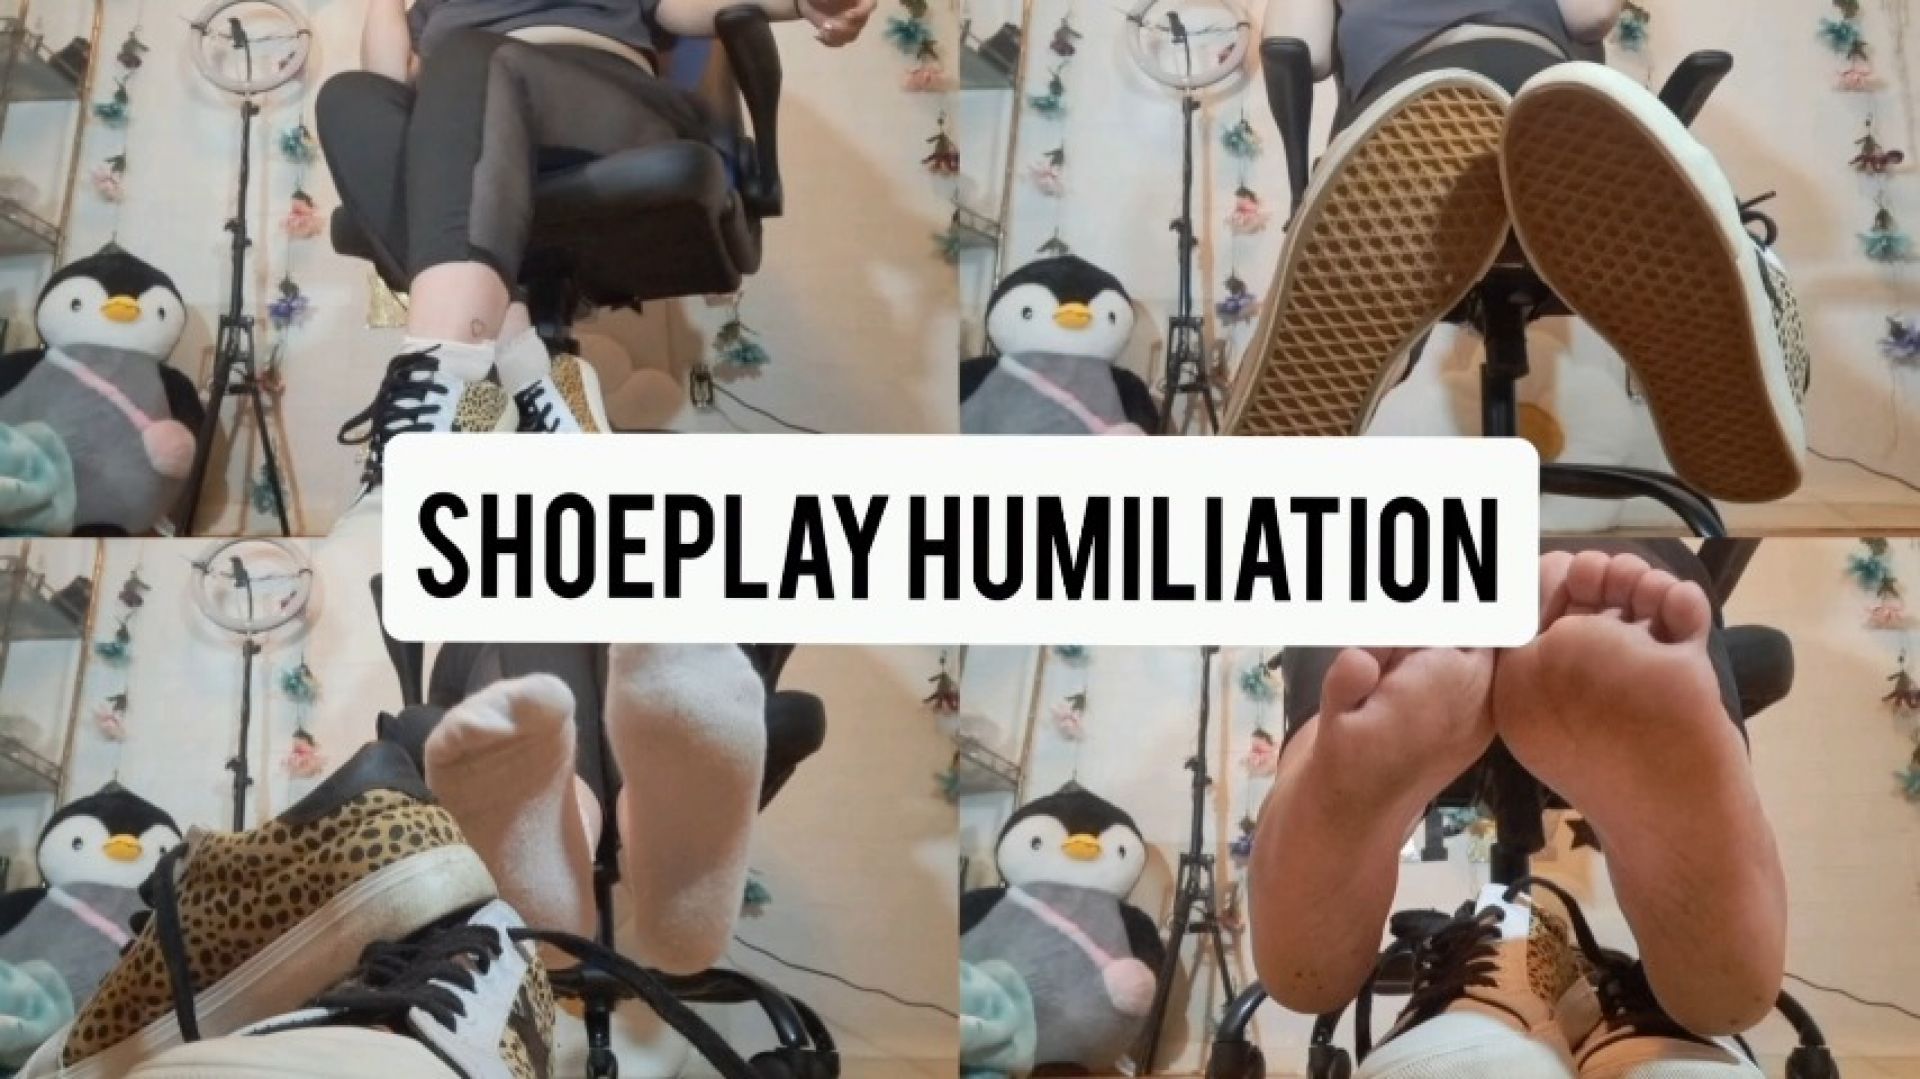 Shoeplay humiliation